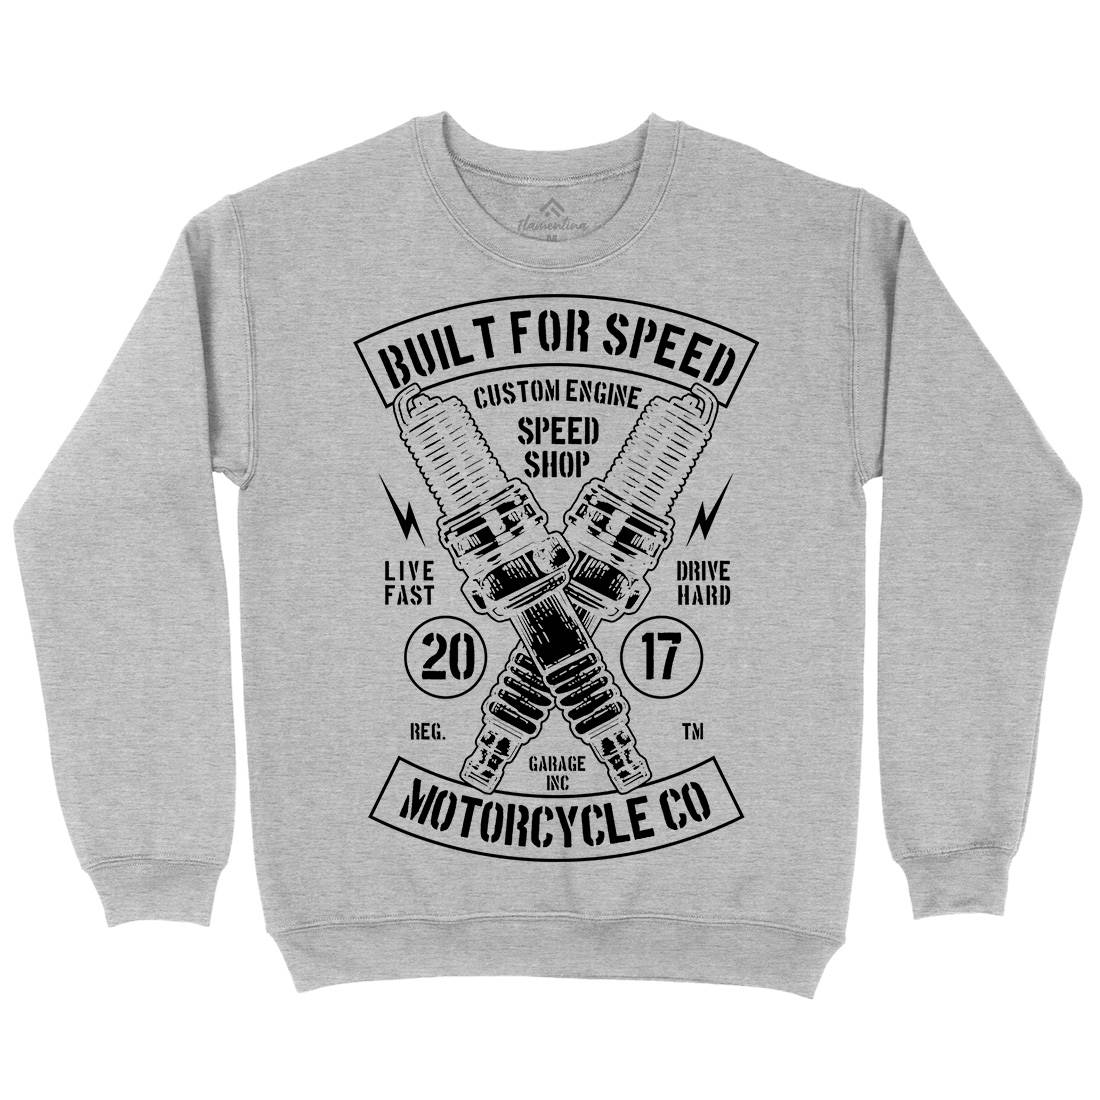 Built For Speed Kids Crew Neck Sweatshirt Motorcycles B188